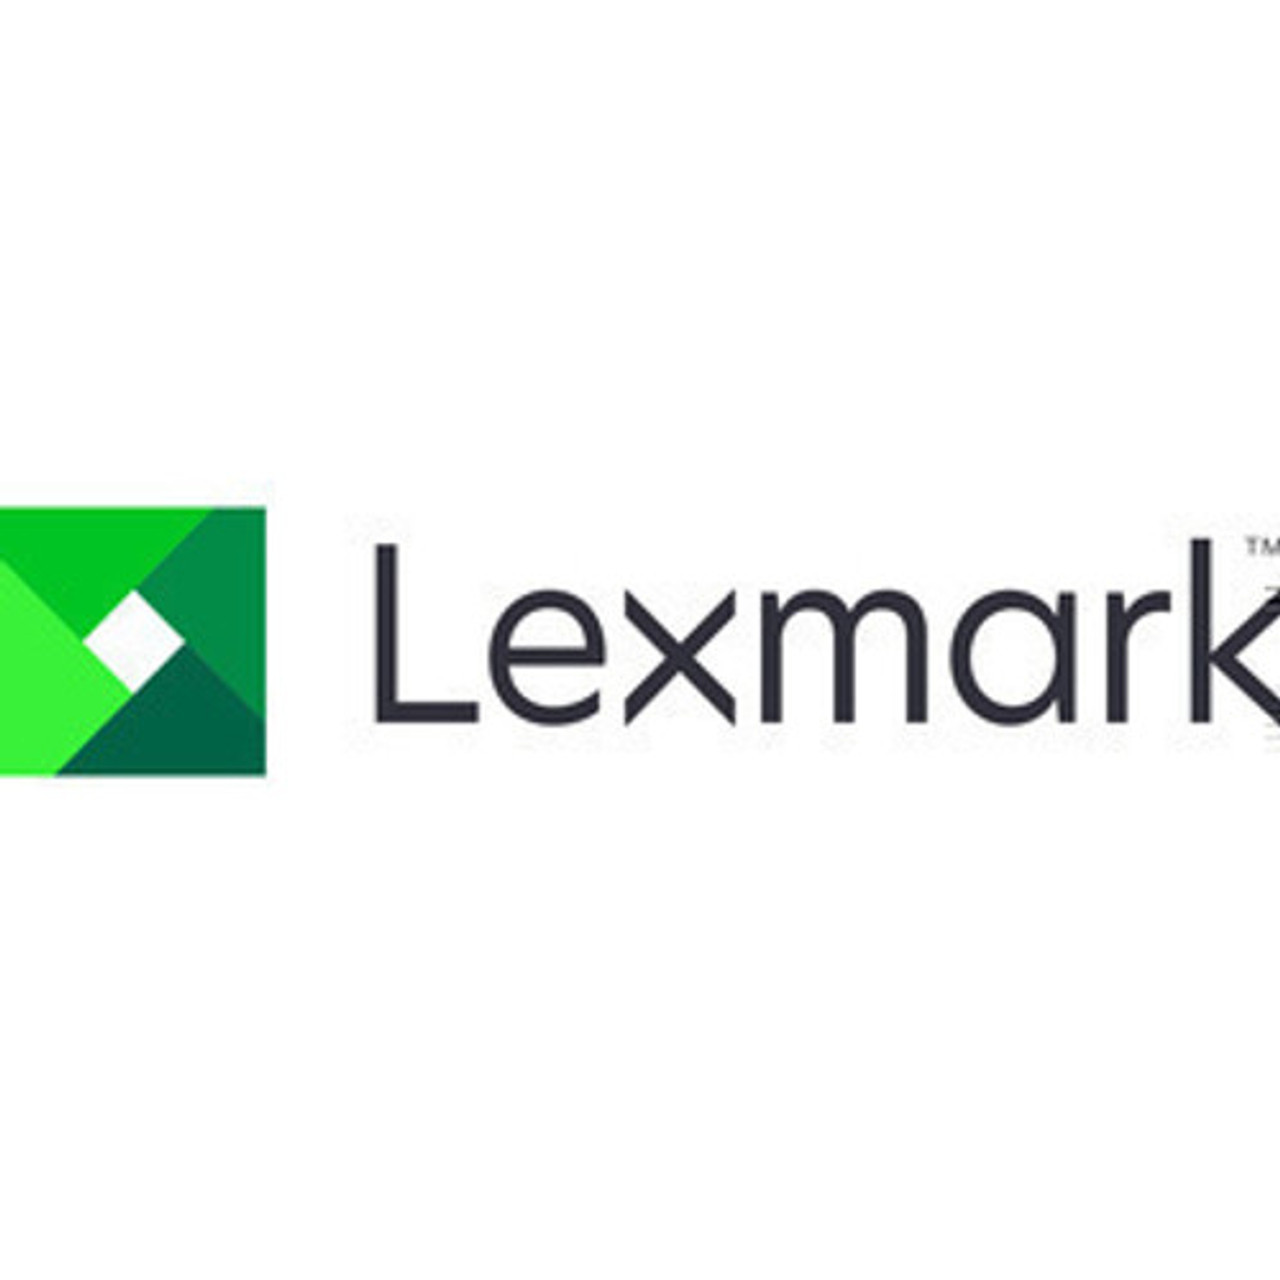 Lexmark - Printer transfer roller maintenance kit - forLexmark B2865, M5255, M5270, MS725, MS821, MS822, MS823, MS825, MS826, MX822 - 41X2352